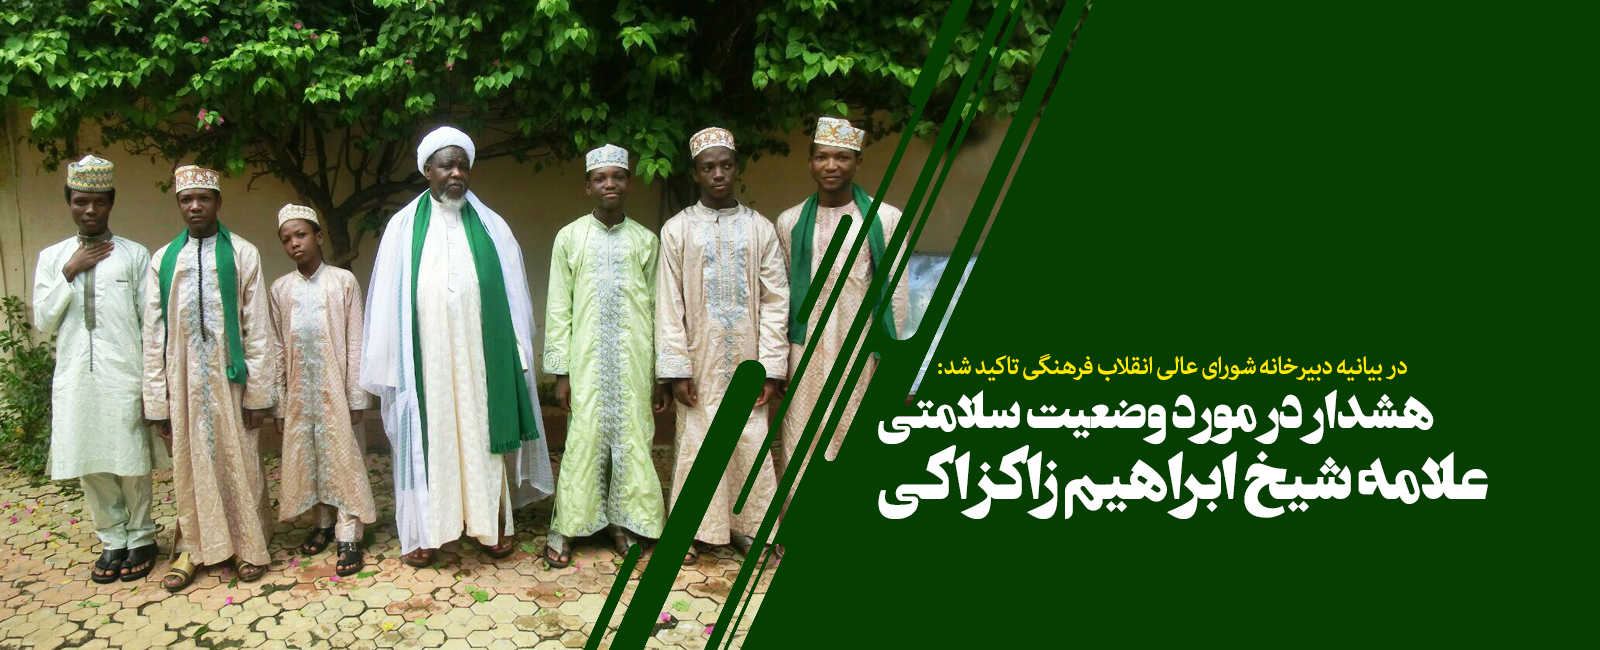 هشدار در مورد وضعیت سلامتی علامه شیخ ابراهیم زکزاکی به دولت نیجریه